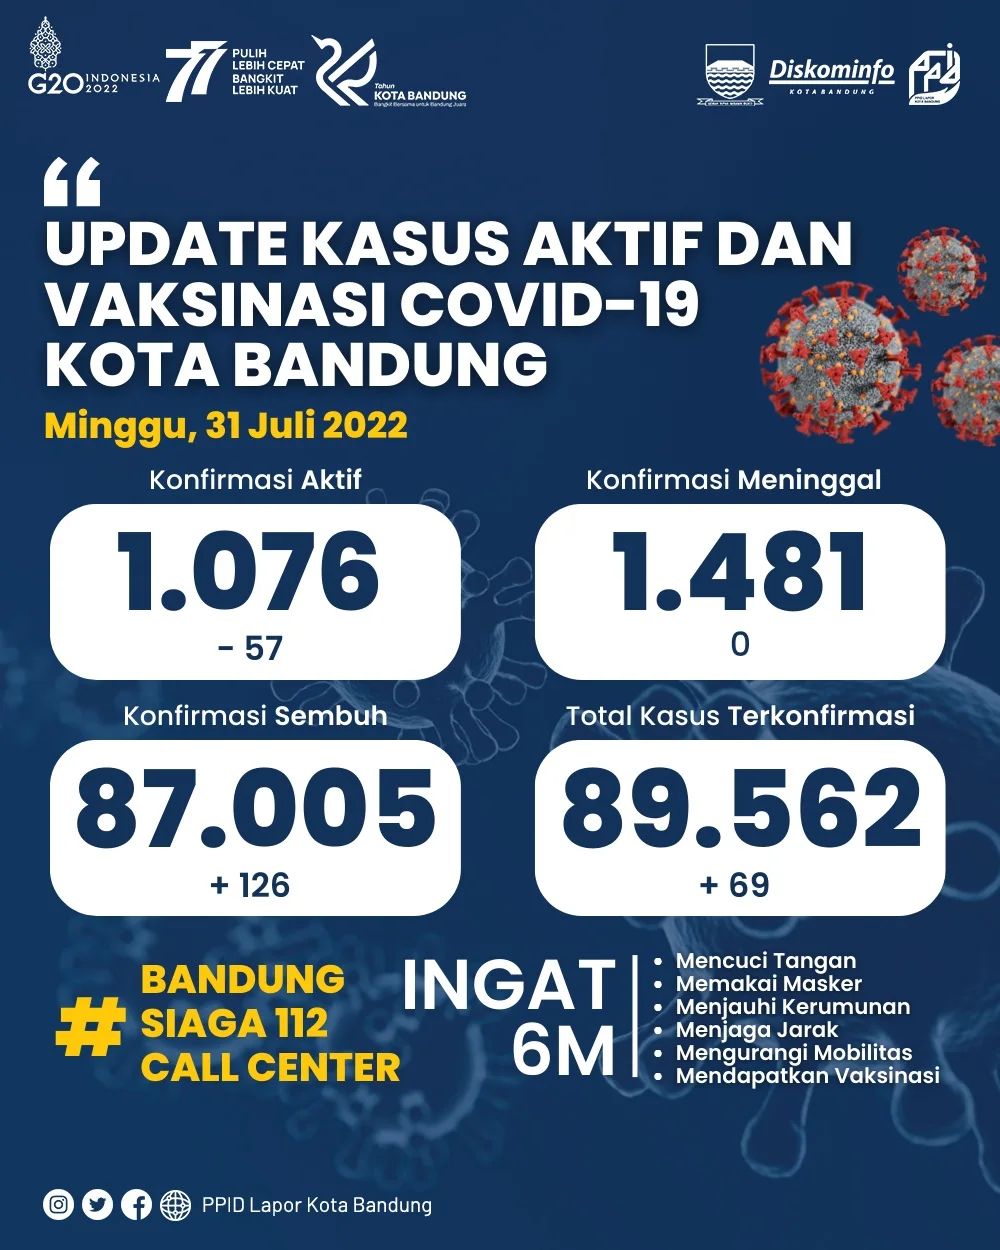 UPDATE STATISTIK COVID-19 DI KOTA BANDUNG PER TANGGAL 31 JULI 2022